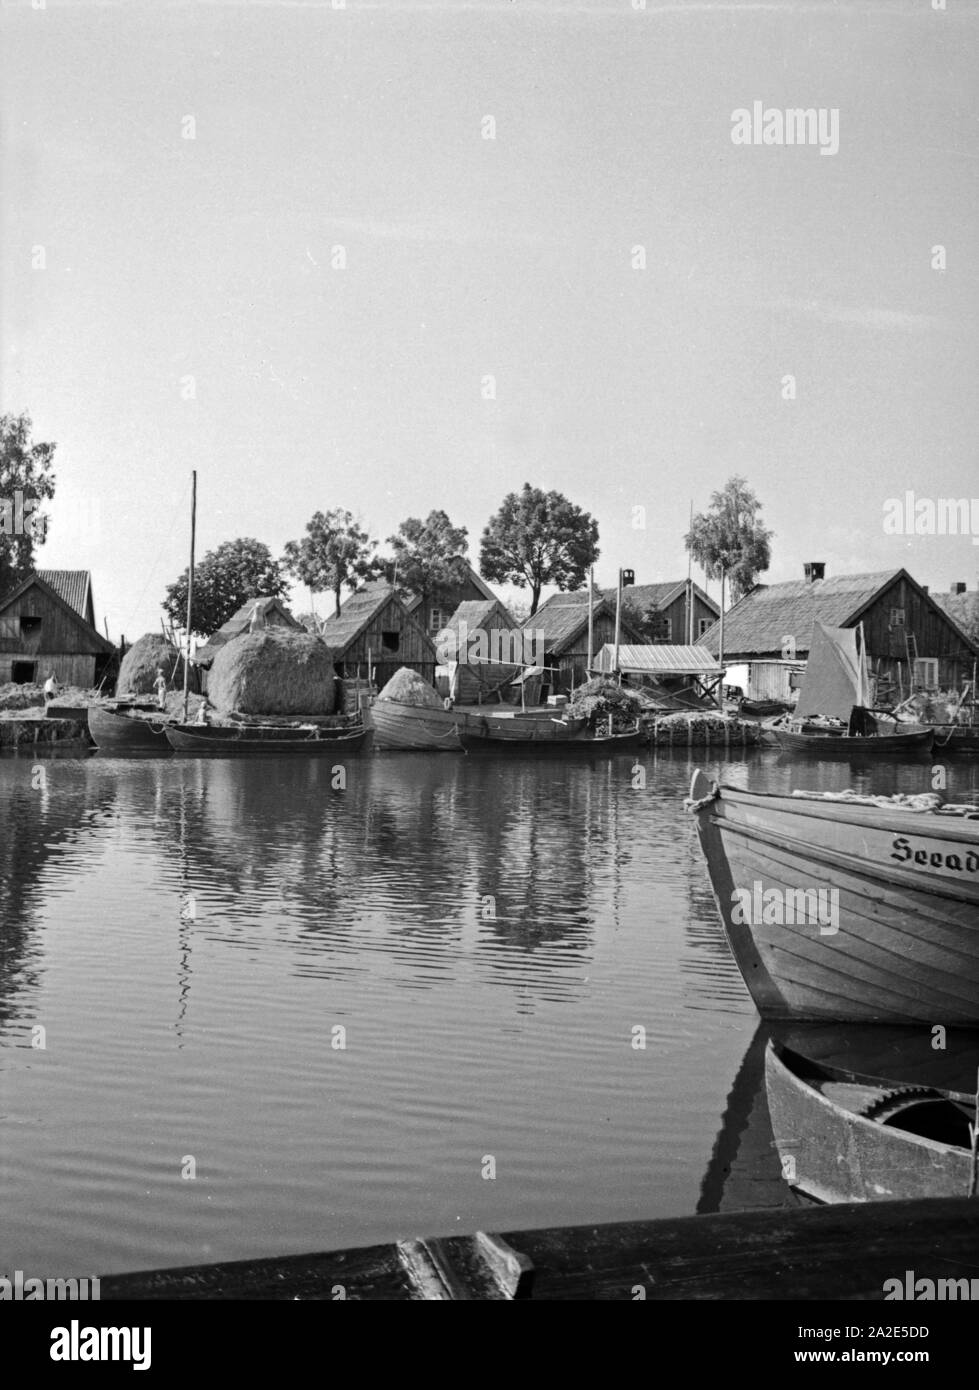 Blick auf das Dorf im dans Memeldelta Tawe Ostpreußen, 1930er Jahre. Vue village Tawe dans th Memel delta en Prusse orientale, 1930. Banque D'Images